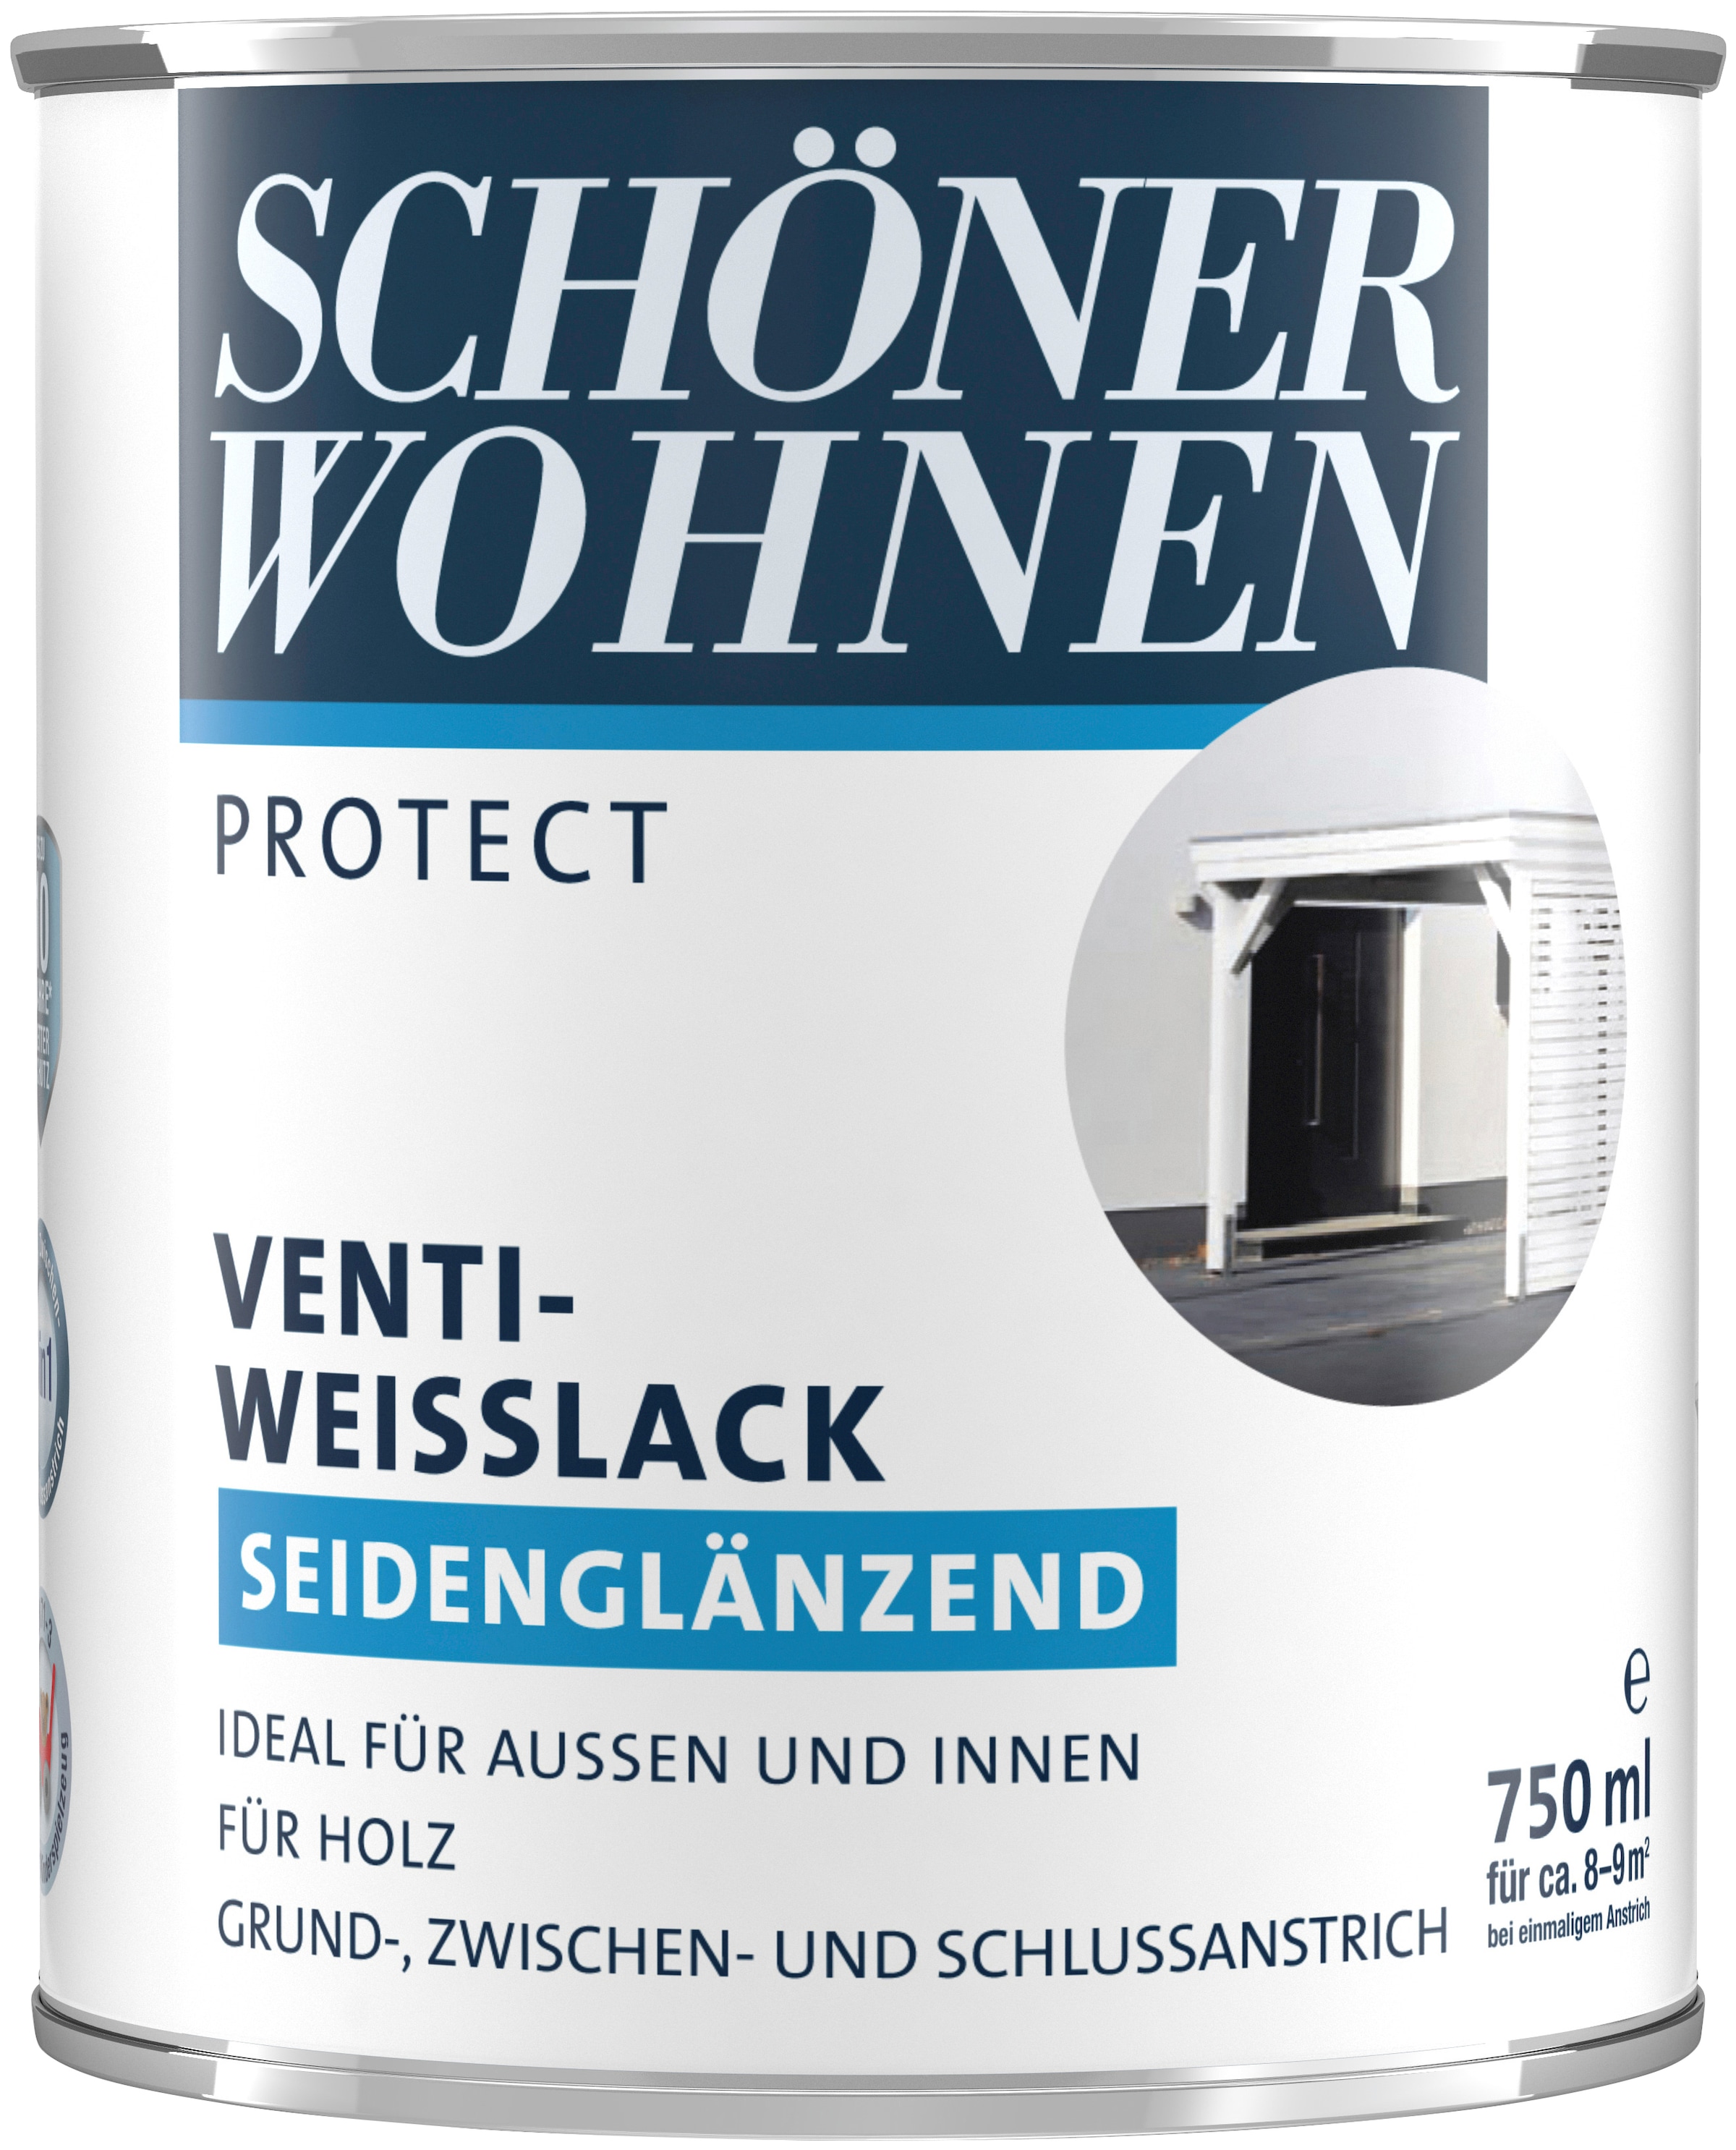 Venti-Weisslack«, »Protect OTTO SCHÖNER bestellen Anstrich bei 750 ml, für außen 3-in-1 Weißlack seidenglänzend, online FARBE WOHNEN innen, und